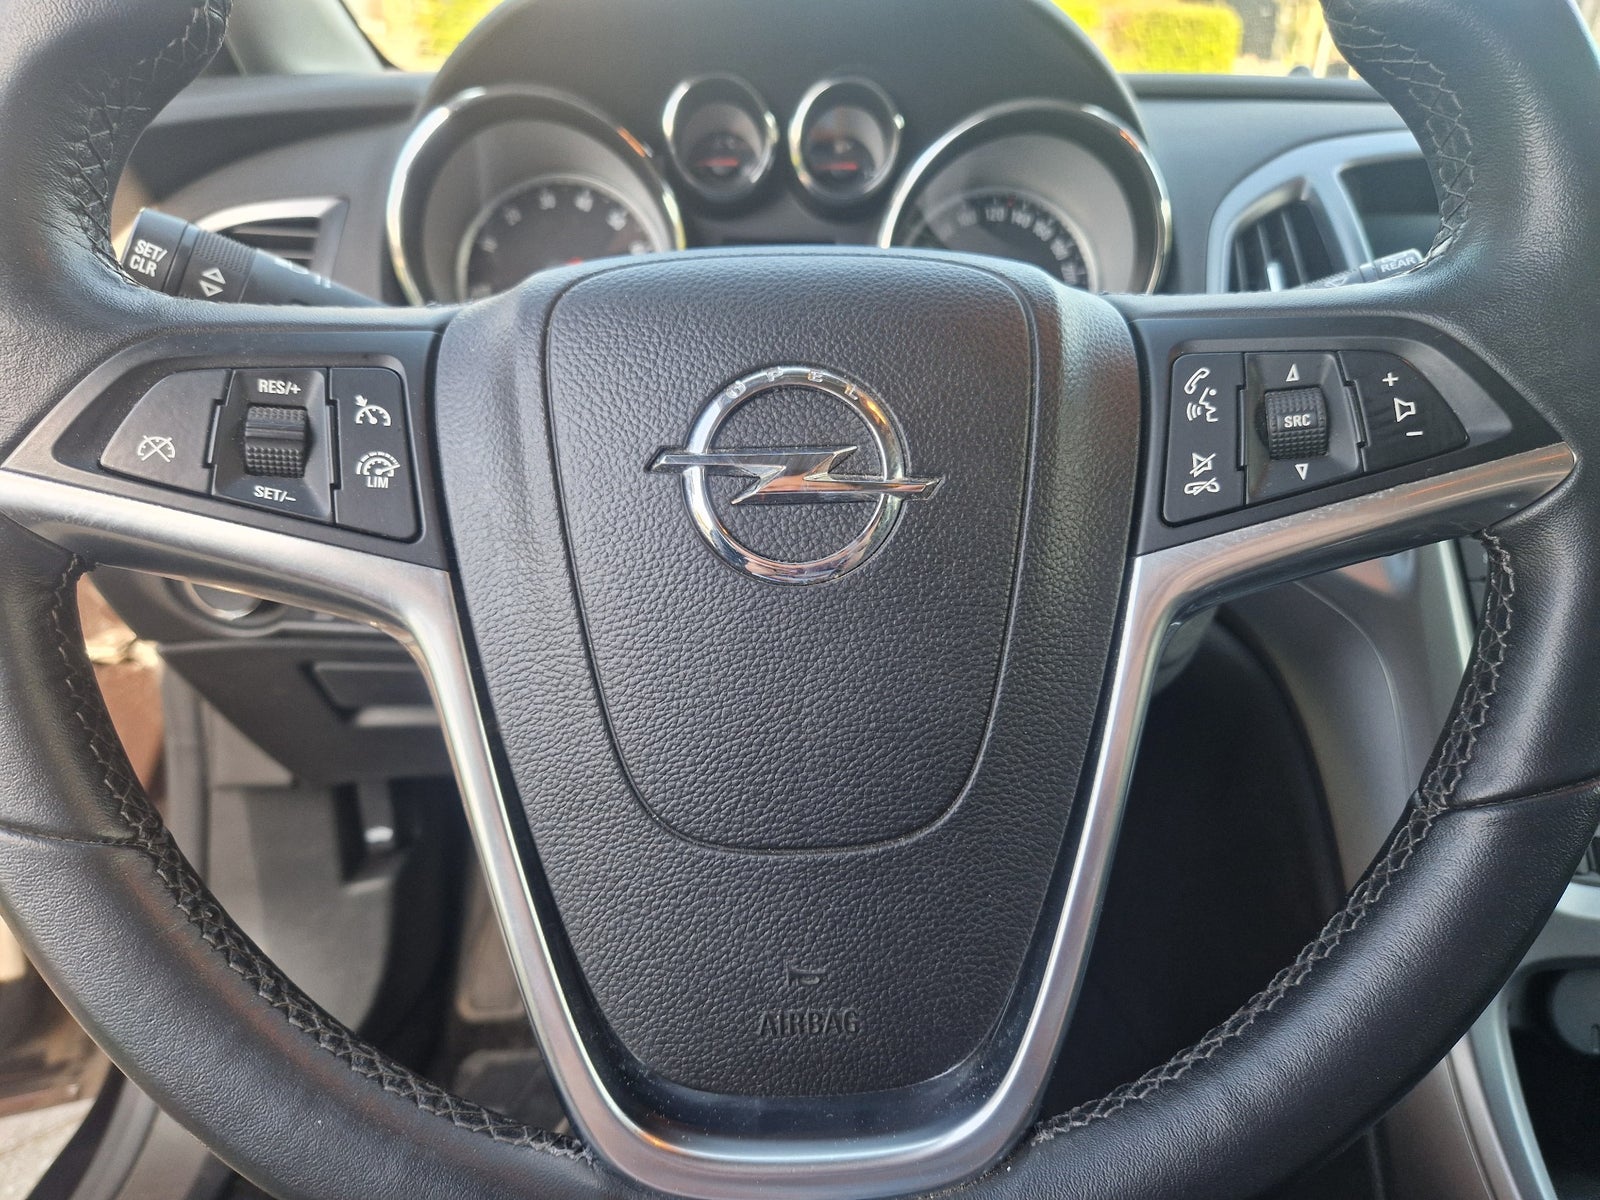 Opel Astra 1,4 T 140 Sport Sports Tourer Benzin modelår 2015